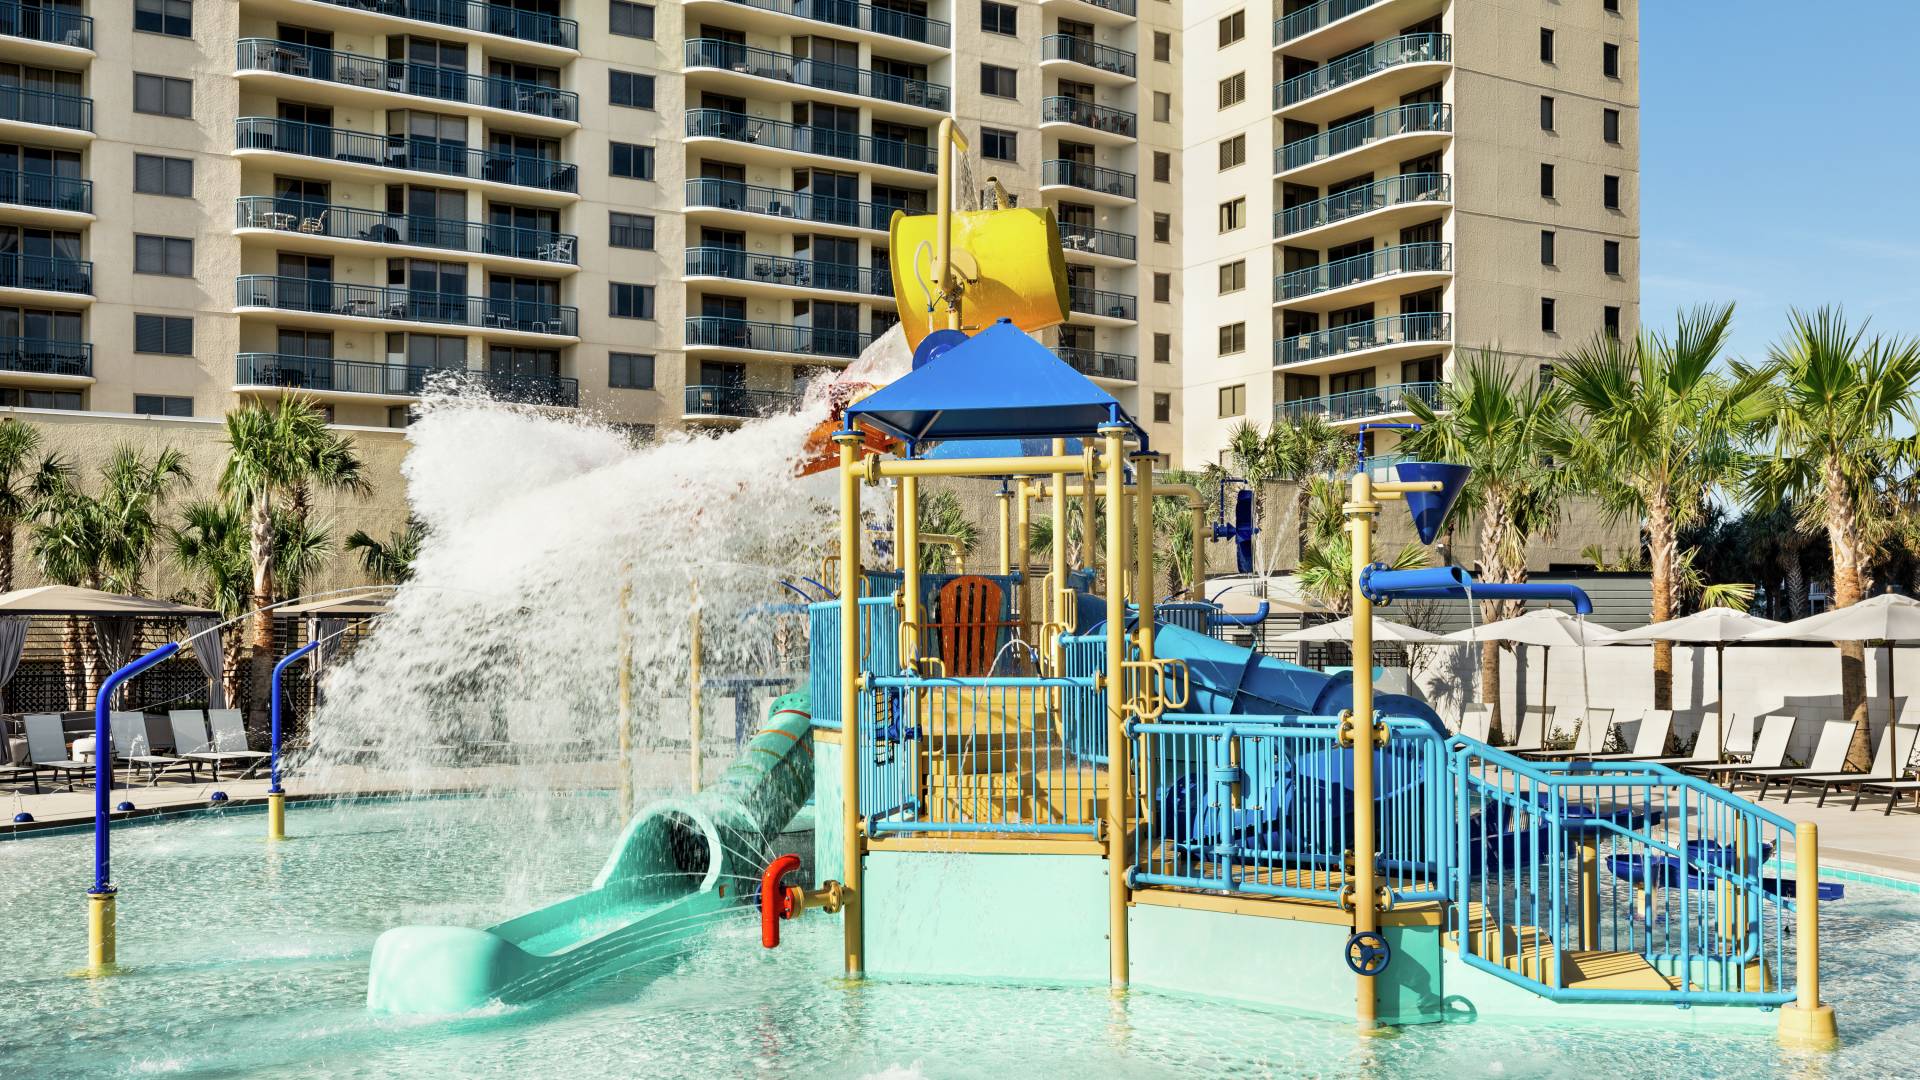 Convenient outdoor kids splash area featuring waterslide